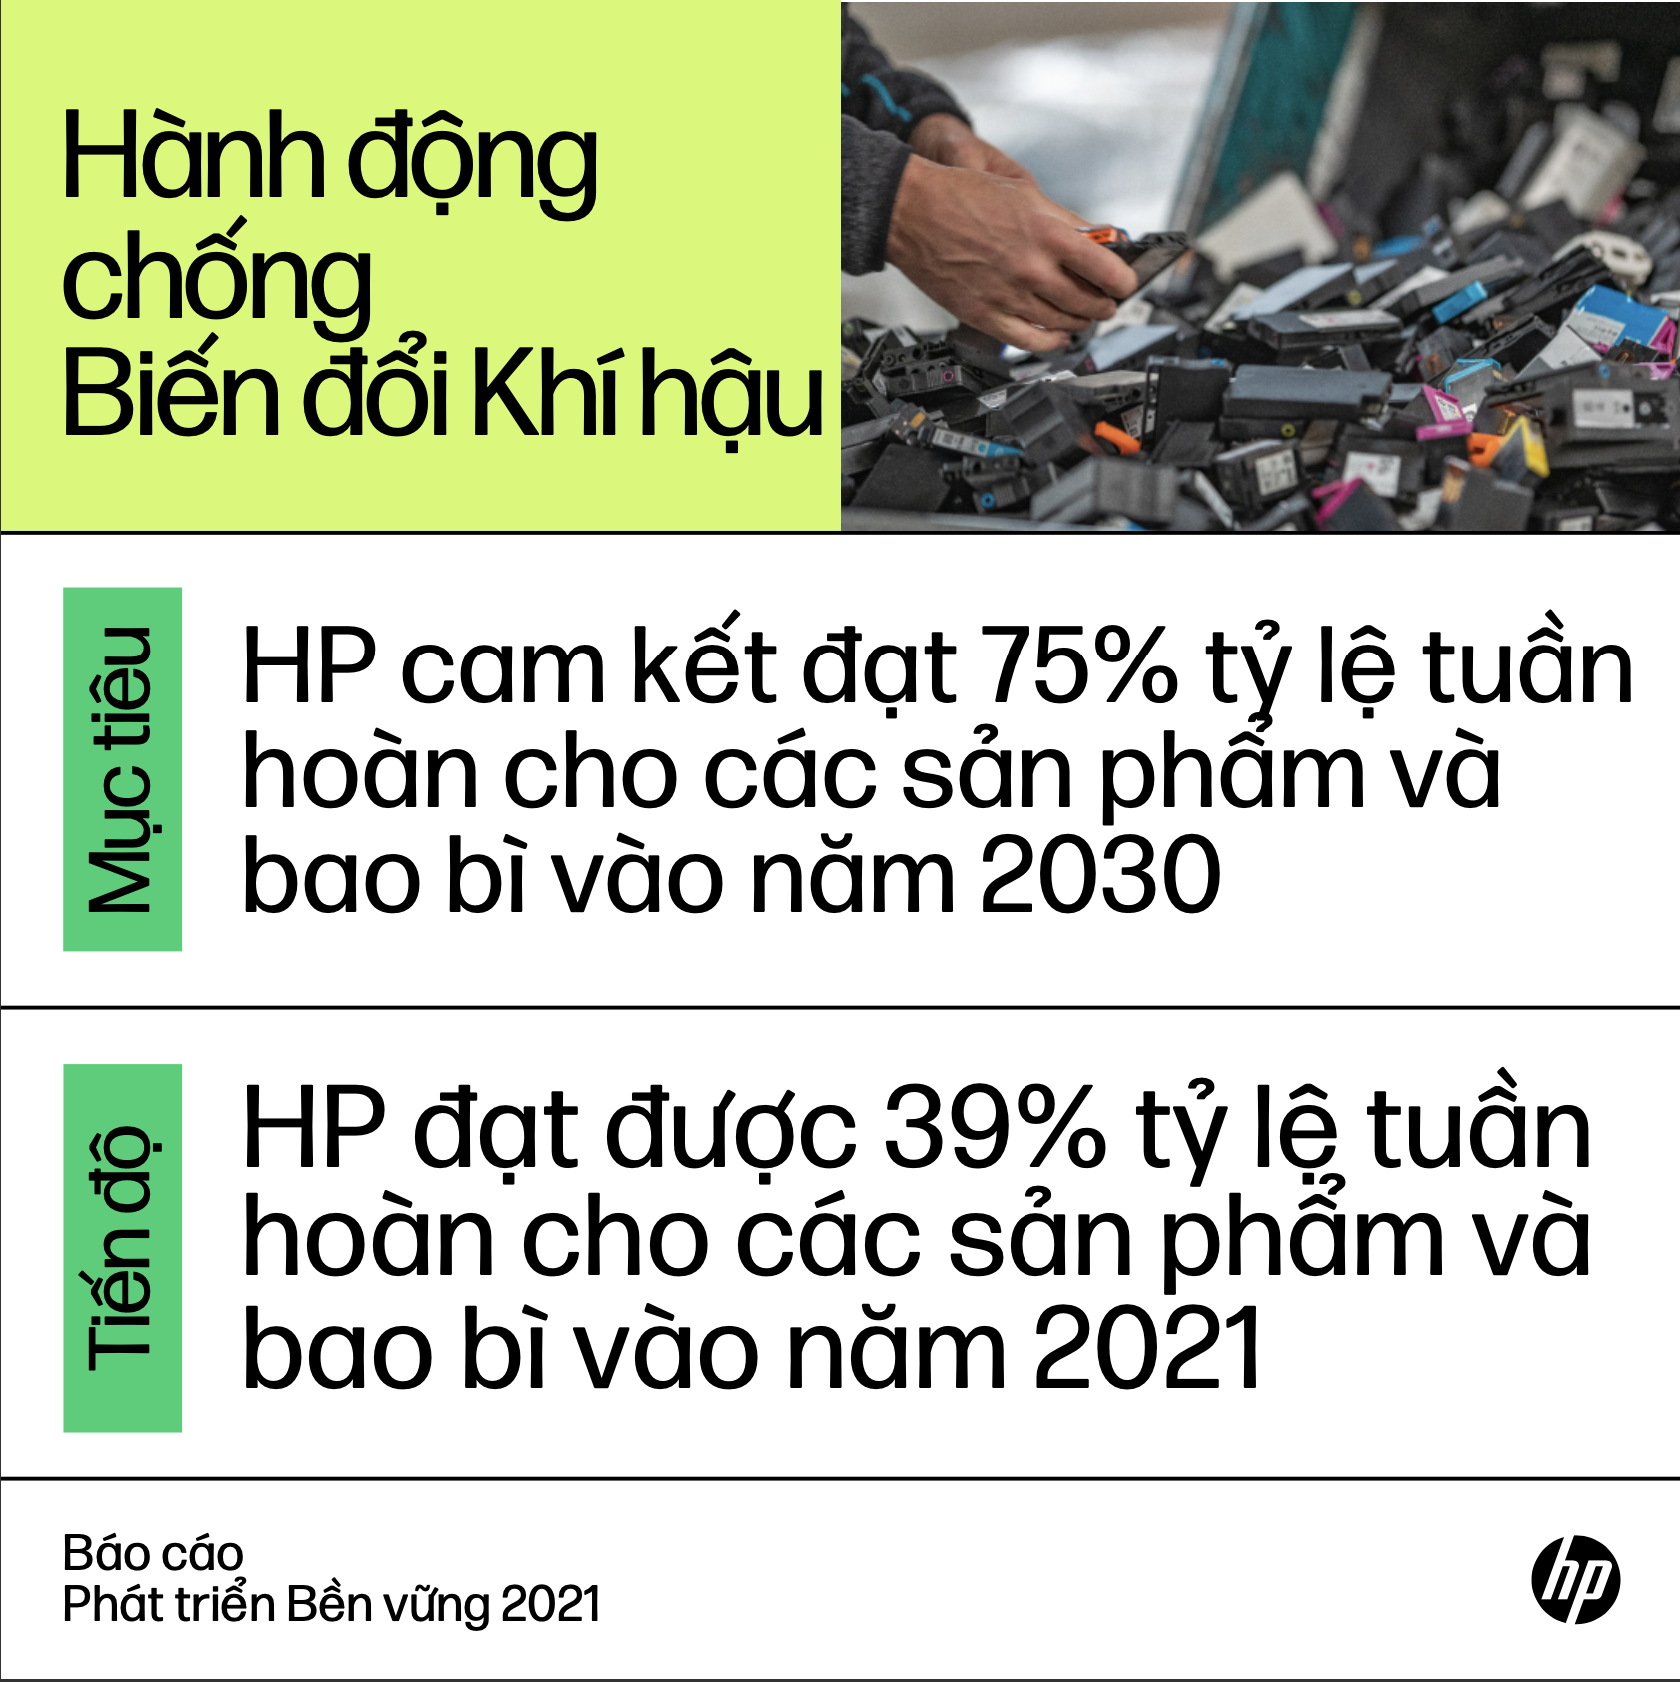 HP công bố Báo cáo Phát triển Bền vững 2021